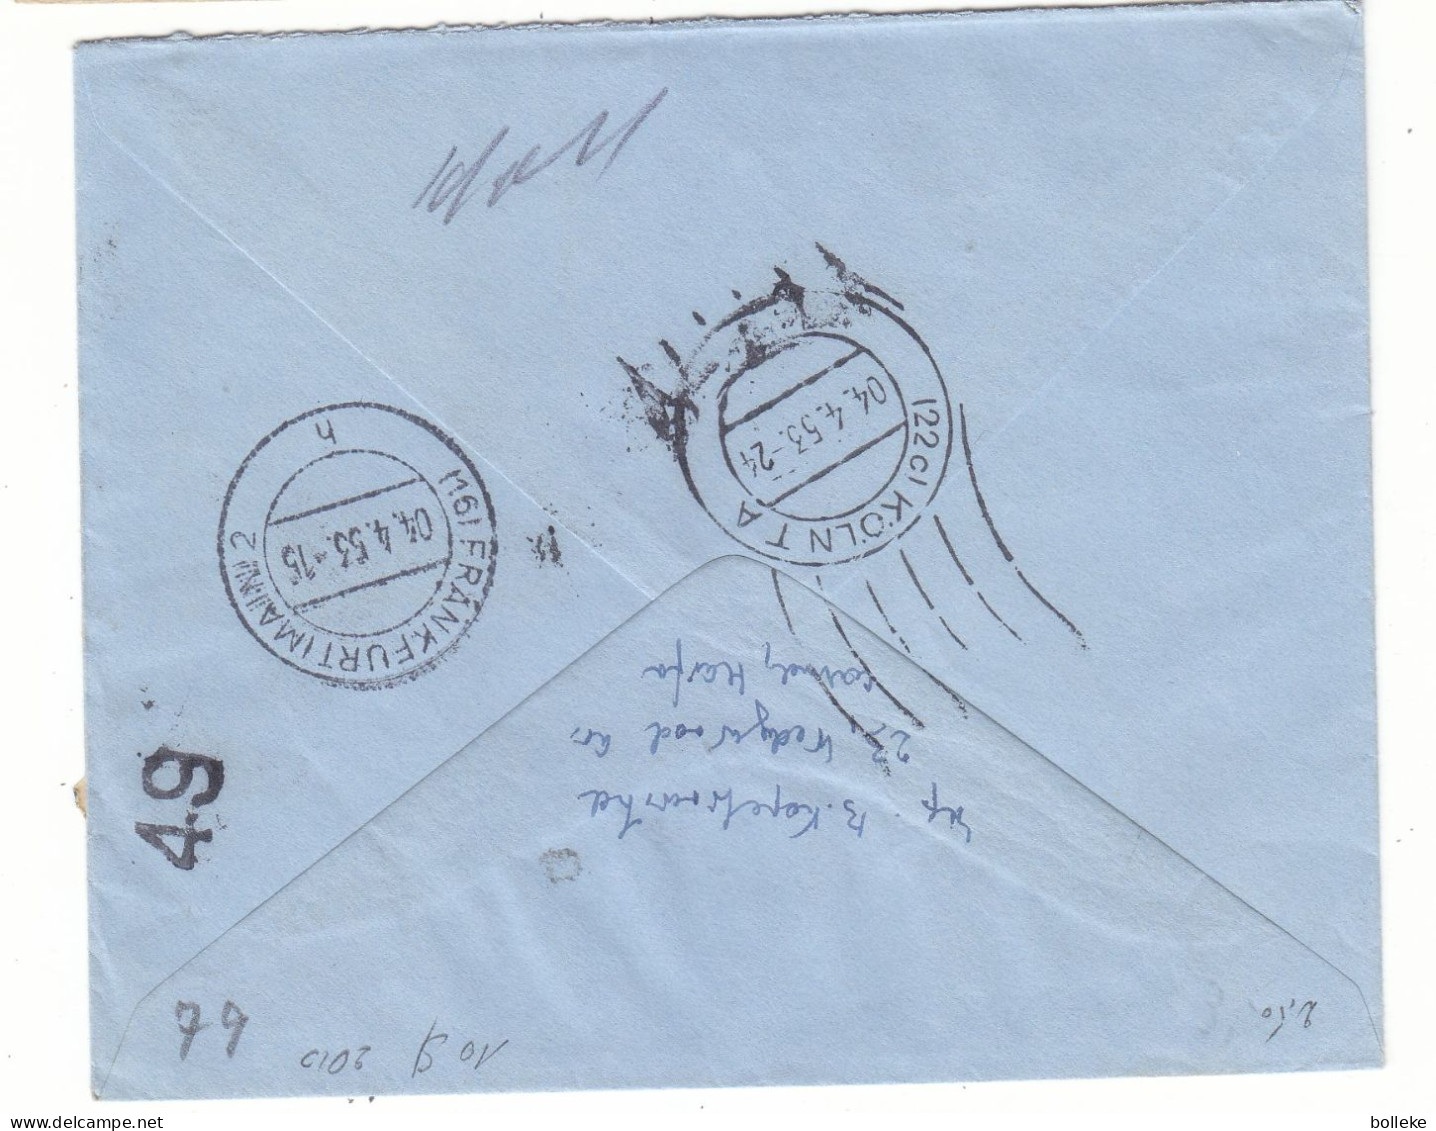 Israël - Lettre Exprès De 1953 - Oblit Haifa - Exp Vers Köln - Cachet De  Frankfurt - Valeur 10 $ En ....2010 - - Brieven En Documenten